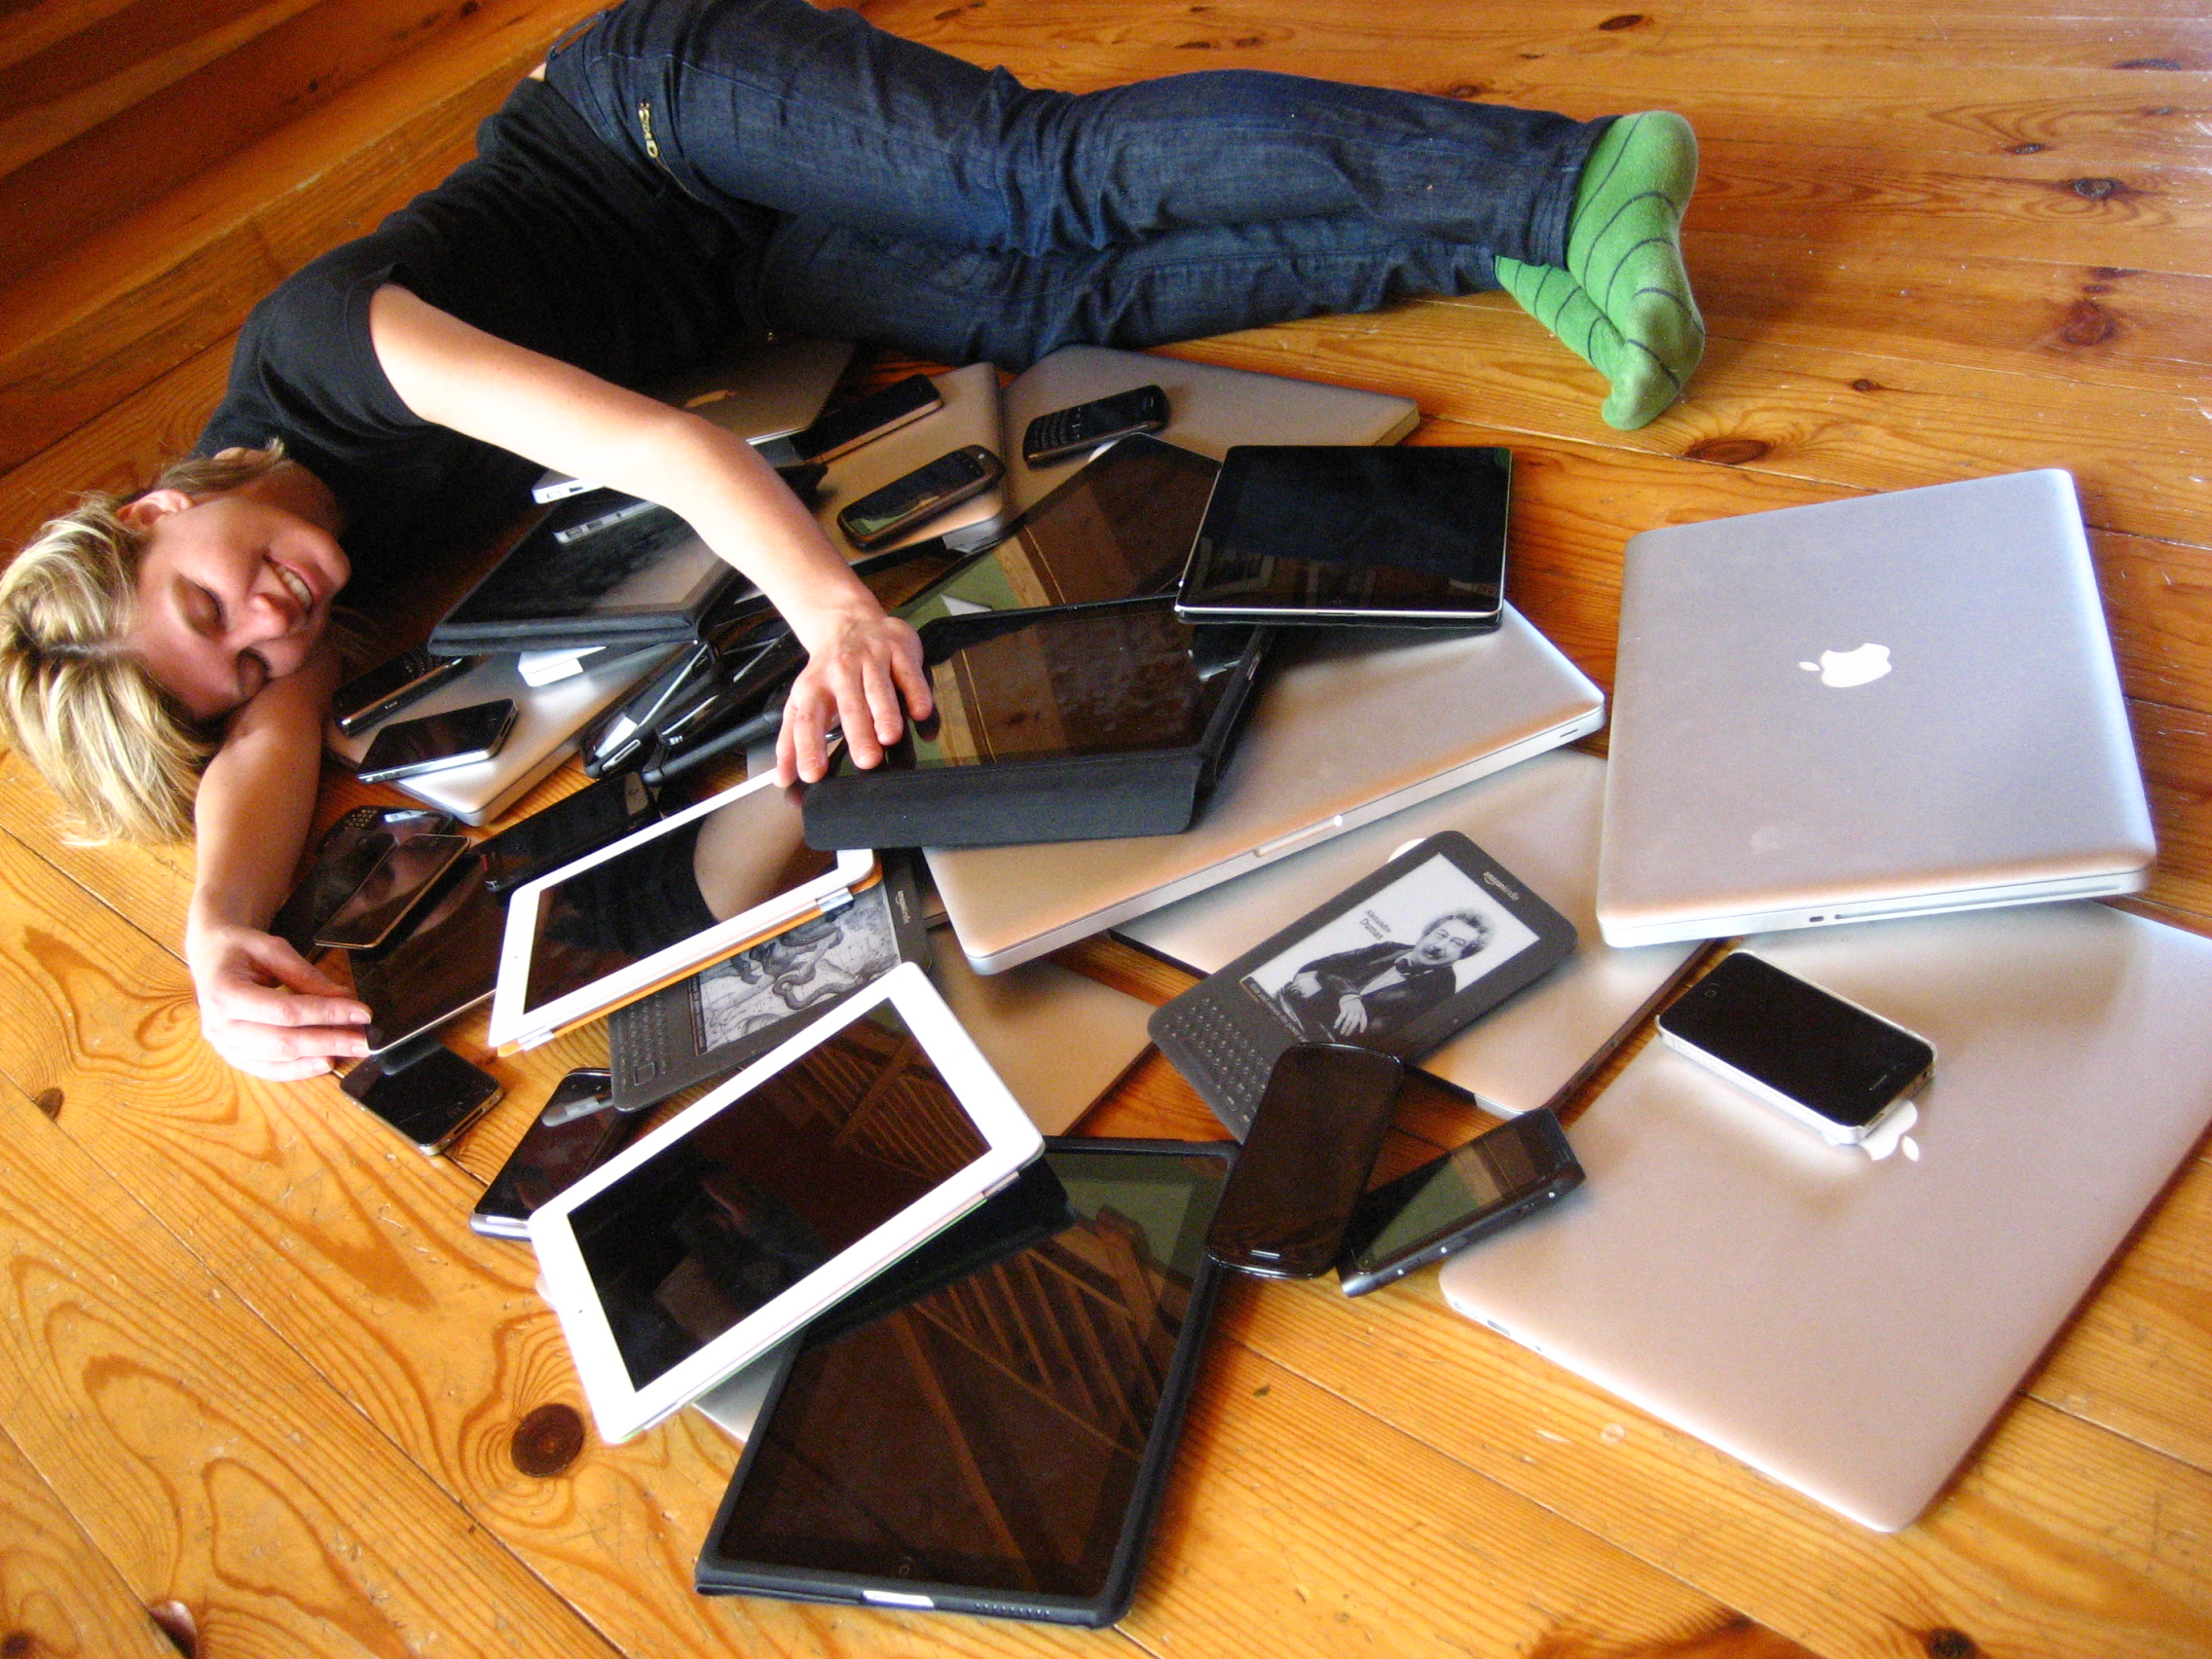 Una persona tumbada en el suelo y rodeada de aparatos electrónicos (teléfonos, ordenadores, etc.).